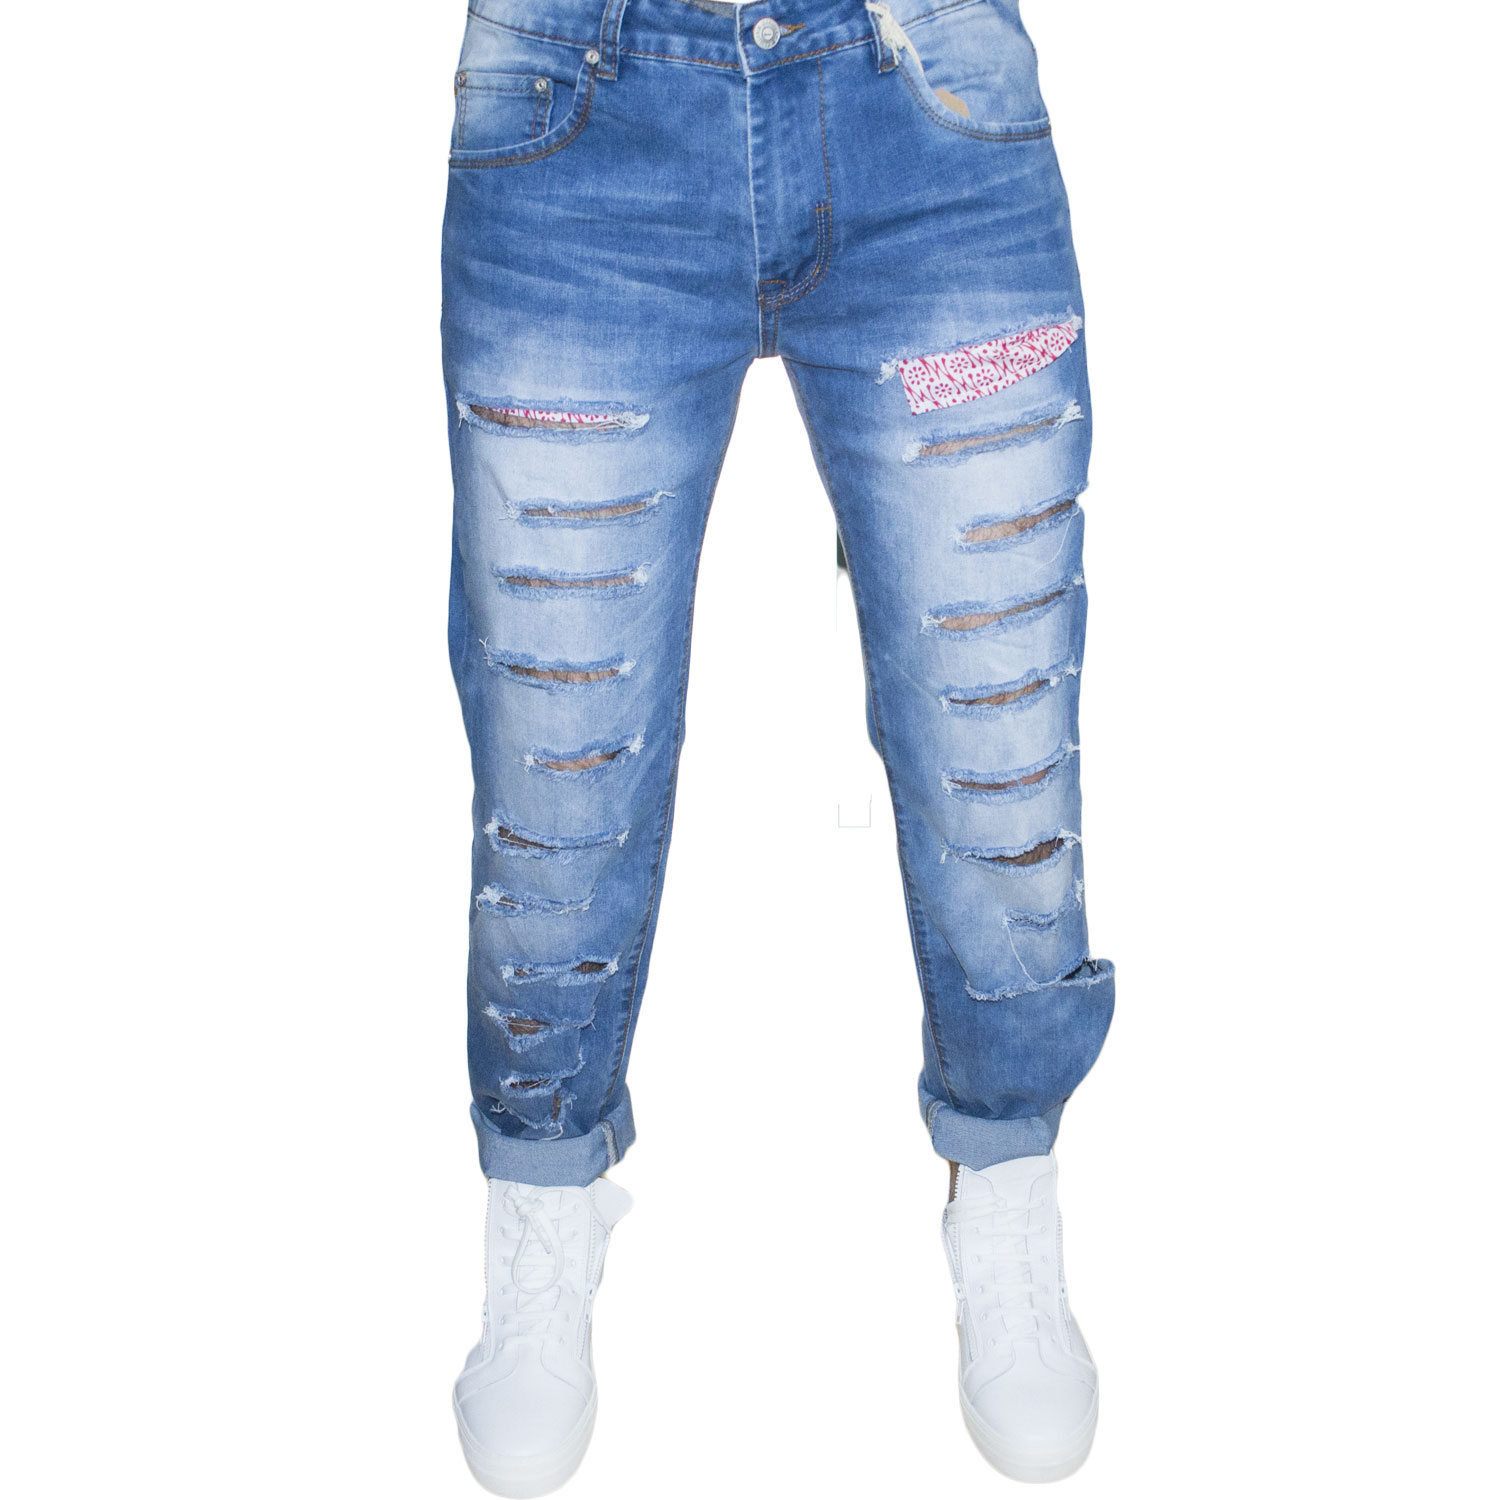 jeans uomo man blu jeans stracciato moda made in italy.